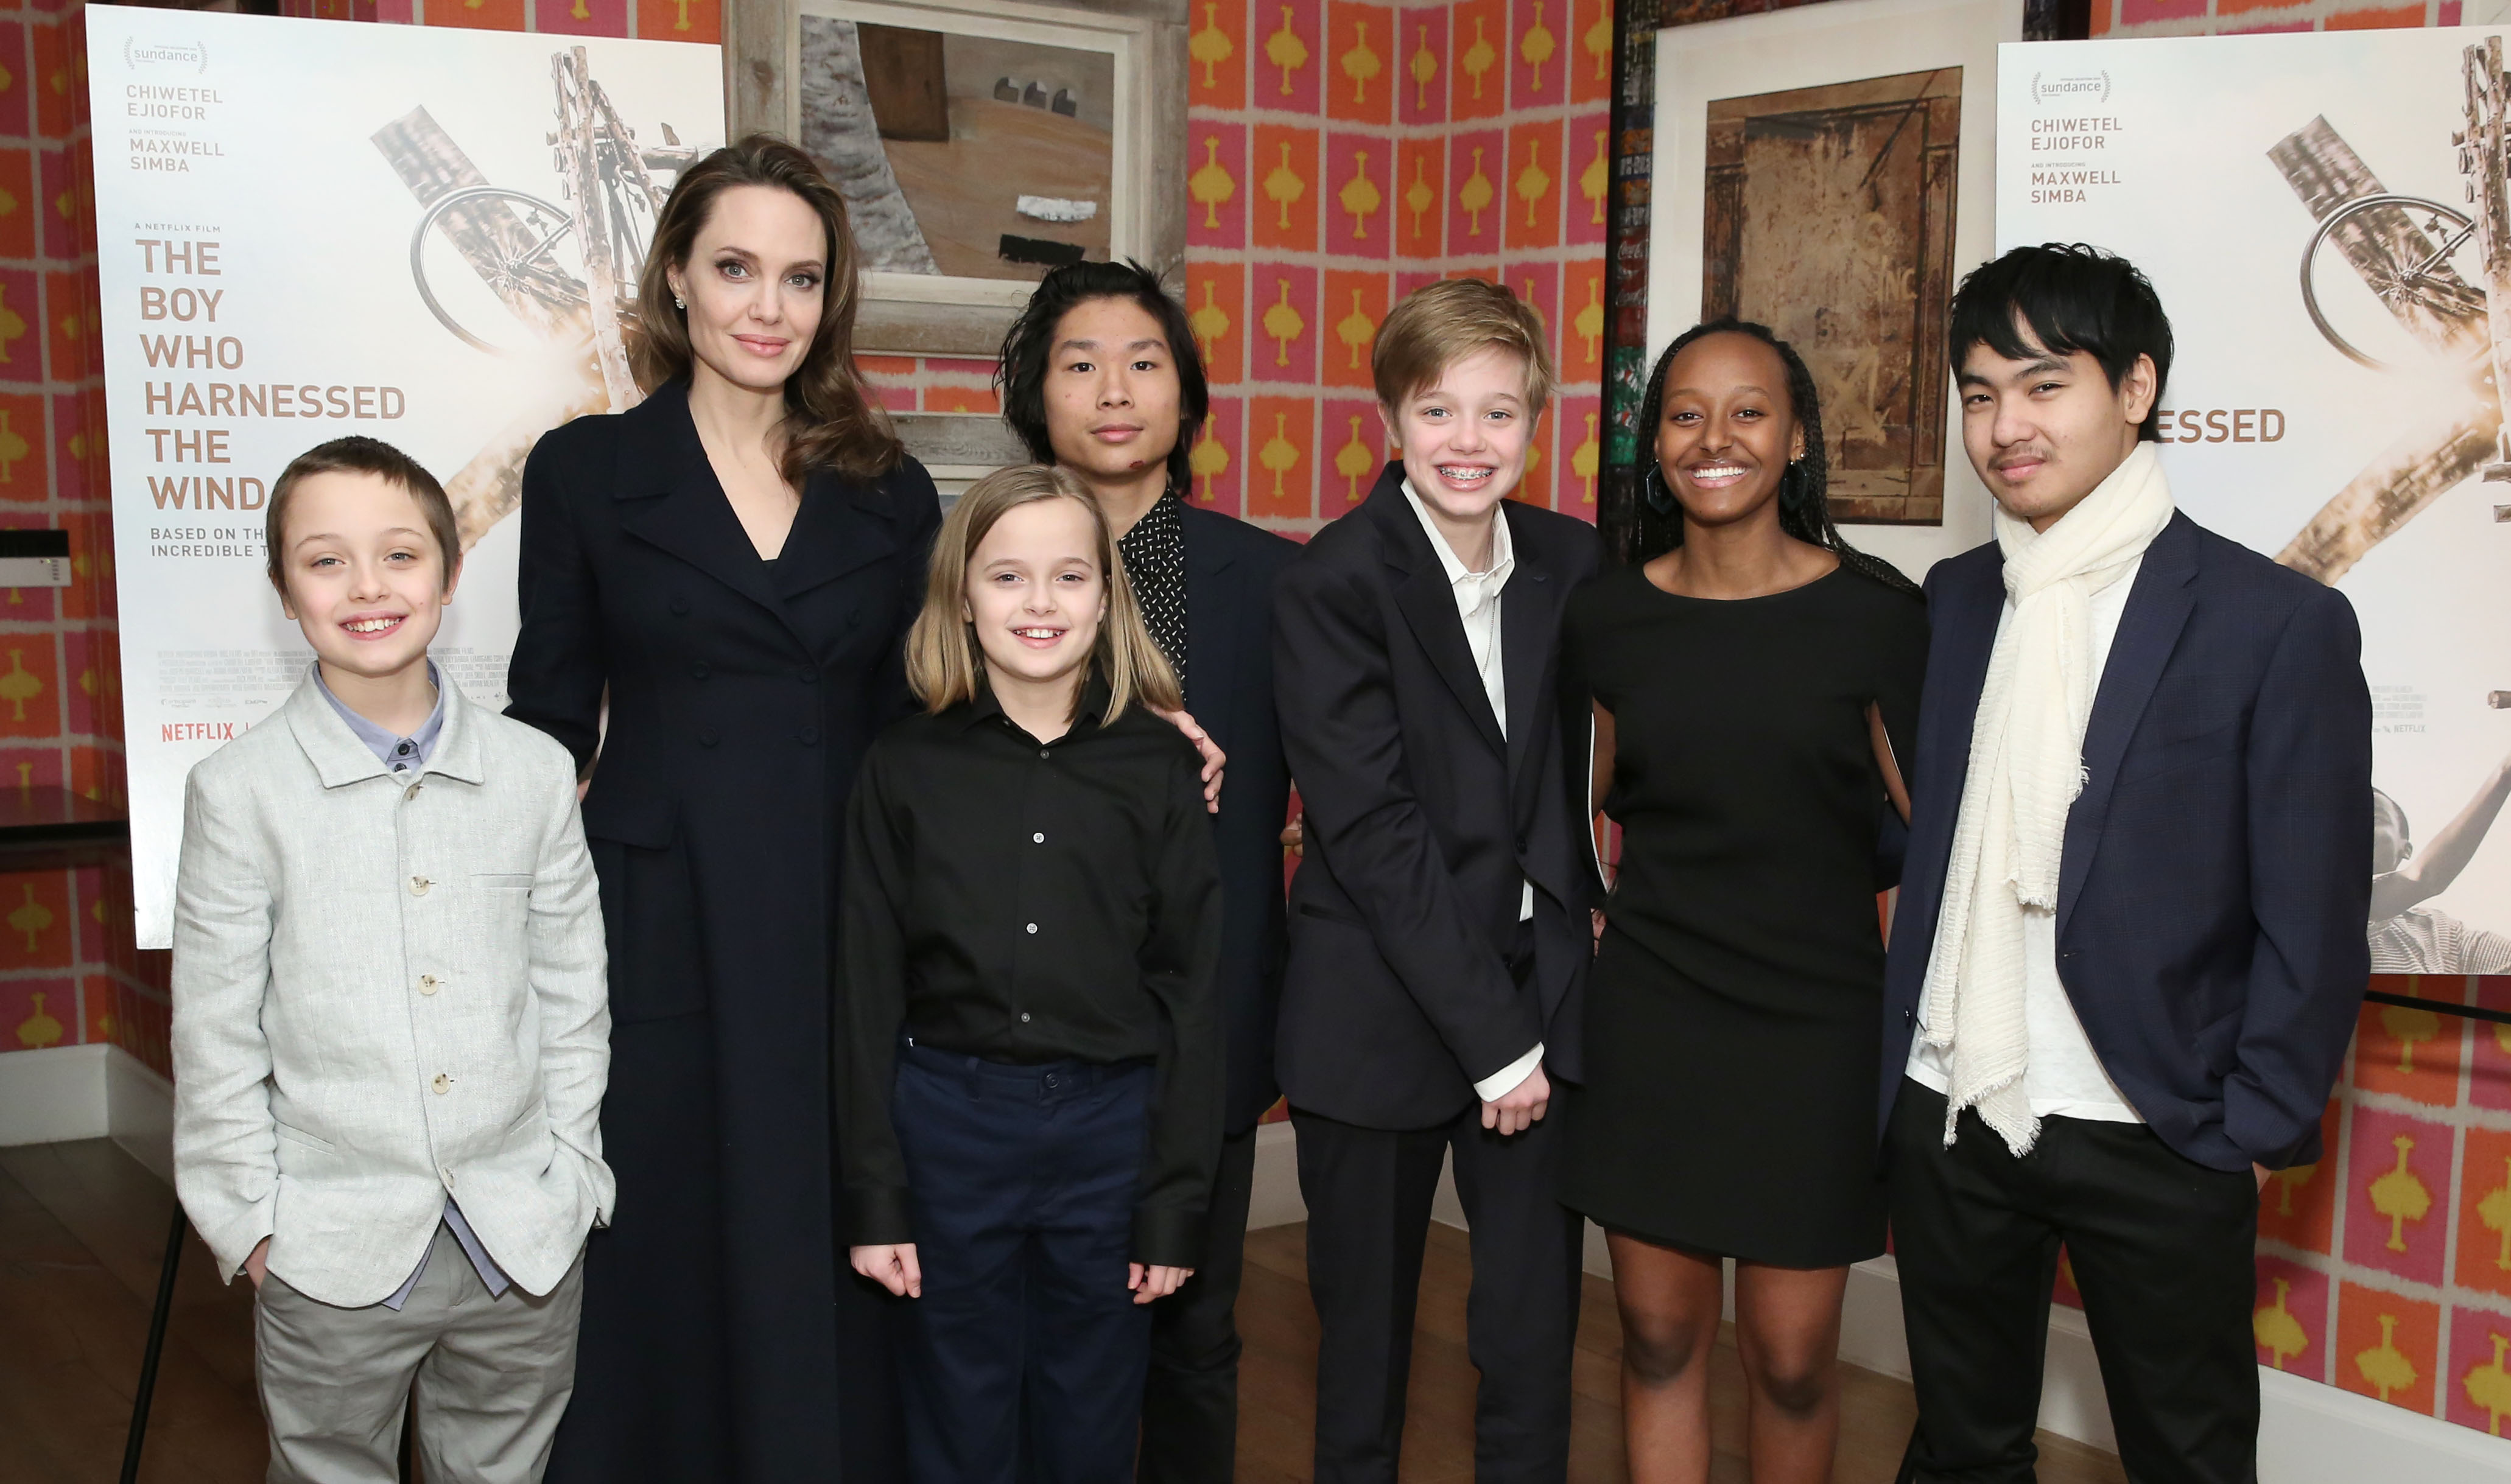 Angelina Jolie avec ses enfants Knox, Vivienne, Pax, Shiloh, Zahara et Maddox lors de la projection de "Le garçon qui dompta le vent" à New York en 2019 | Source : Getty Images